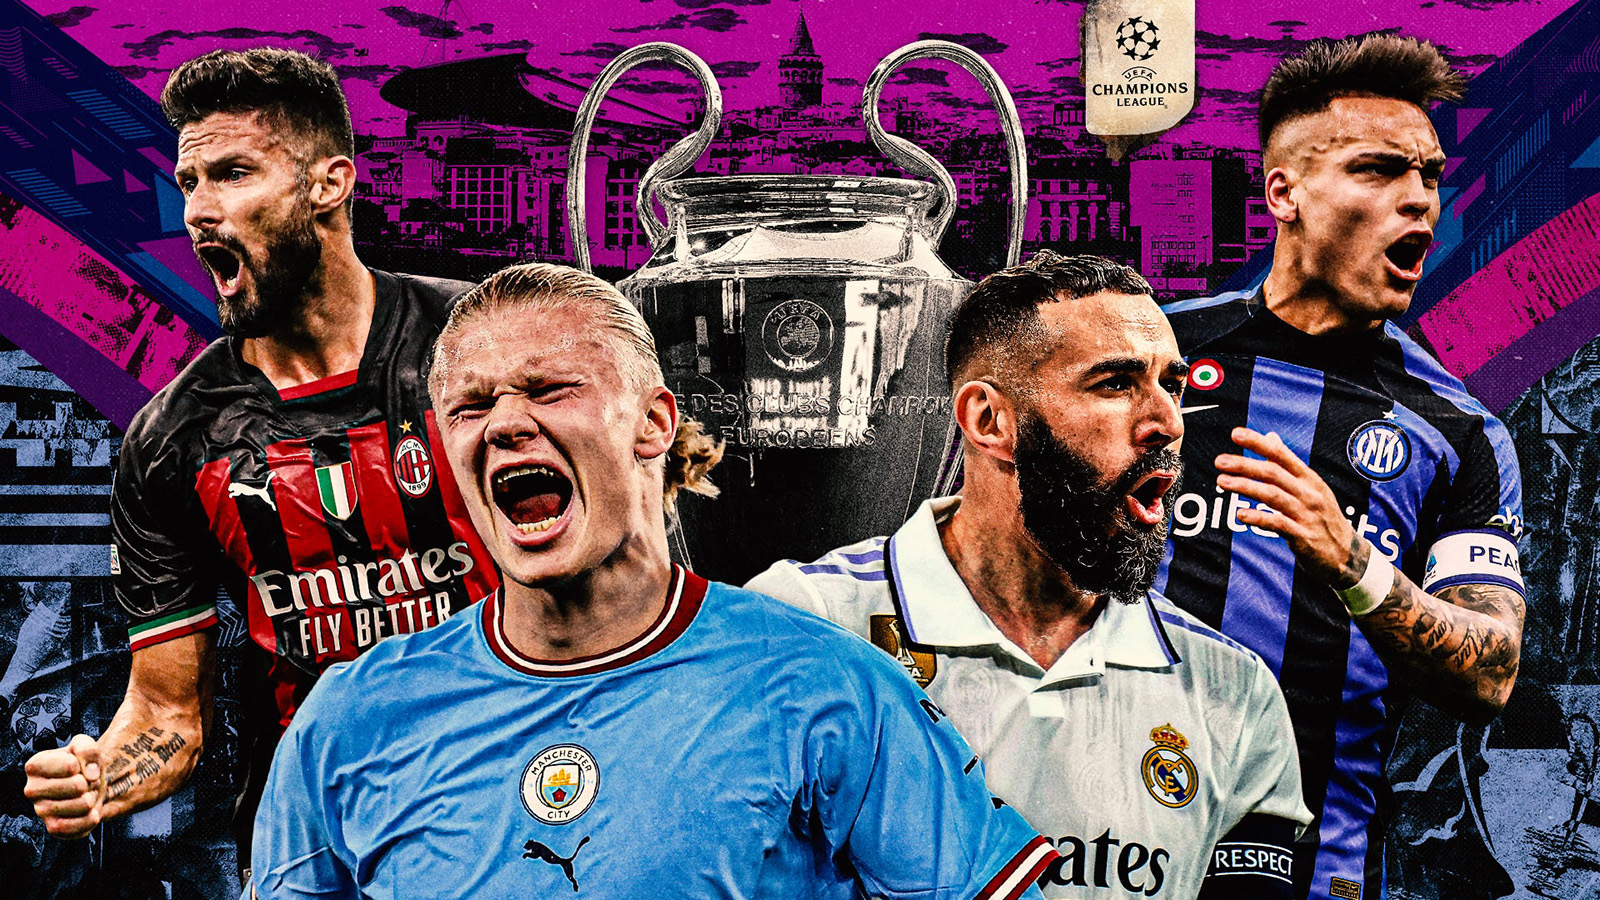 Las semifinales de la UEFA Champions League están confirmadas con cuatro equipos aún con vida. Real Madrid contra Manchester City, e Inter de Milán frente al AC Milan serán los dos duelos que confirmarán a los finalistas de la edición 2022/23 de la UEFA C